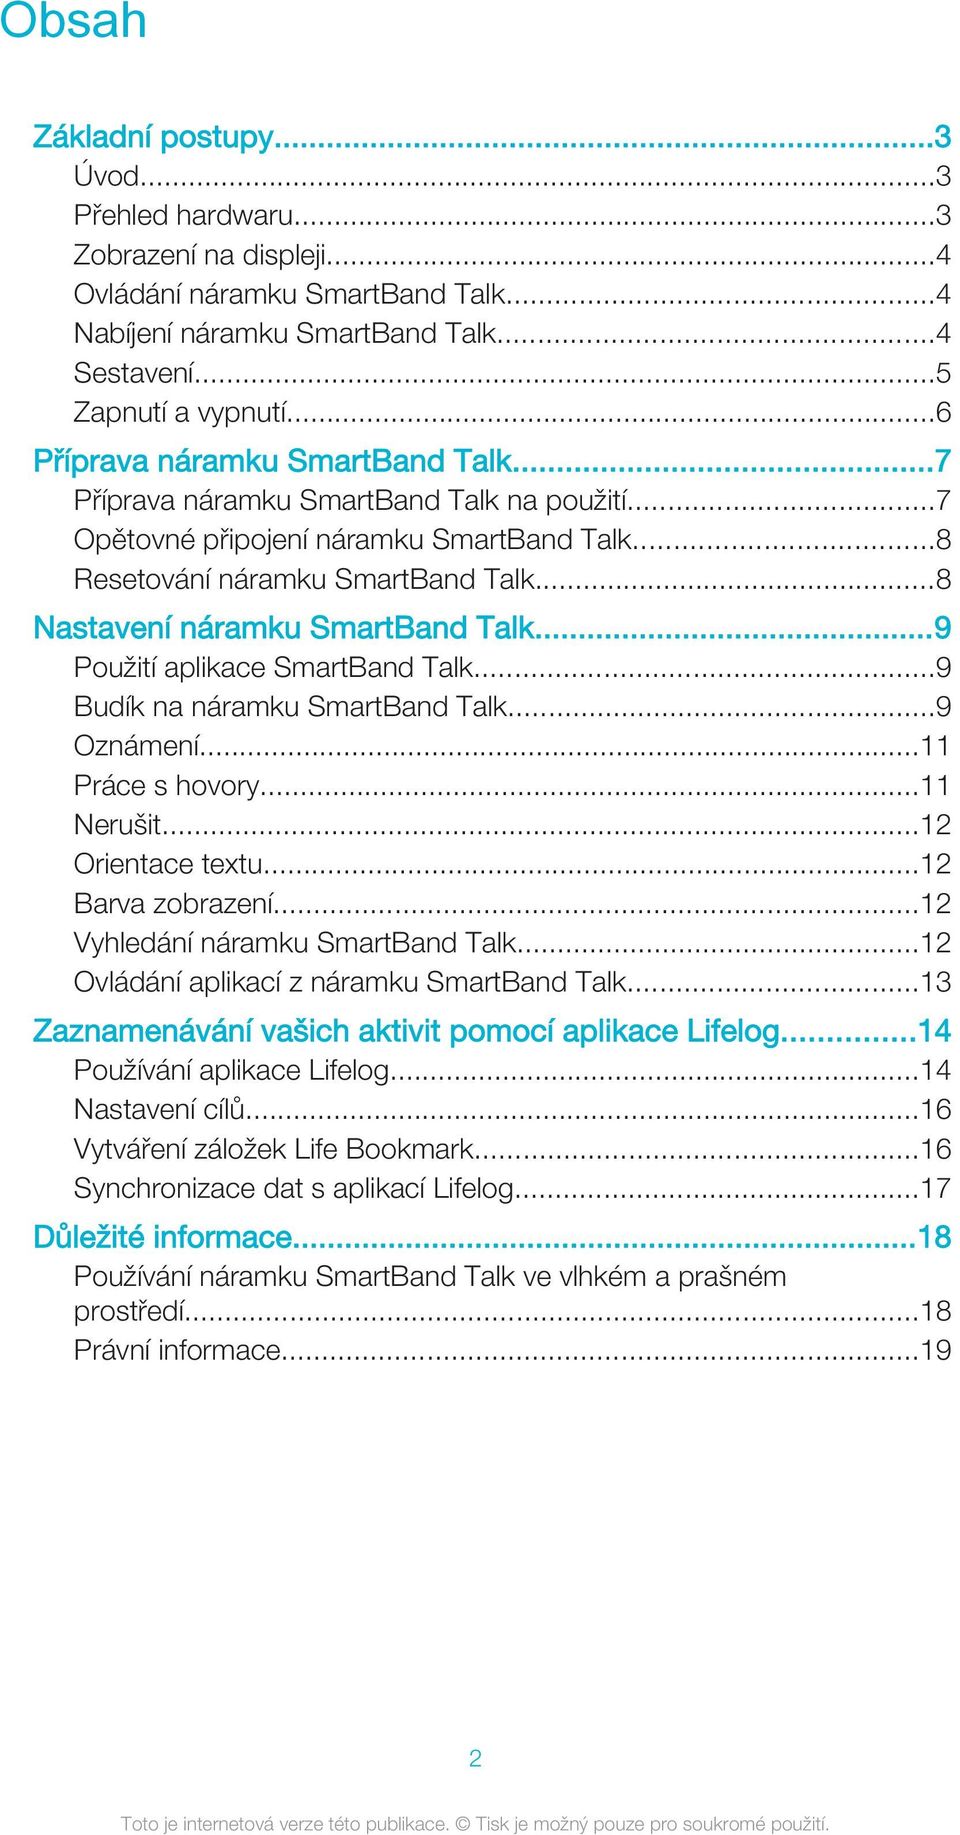 ..8 Nastavení náramku SmartBand Talk...9 Použití aplikace SmartBand Talk...9 Budík na náramku SmartBand Talk...9 Oznámení...11 Práce s hovory...11 Nerušit...12 Orientace textu...12 Barva zobrazení.